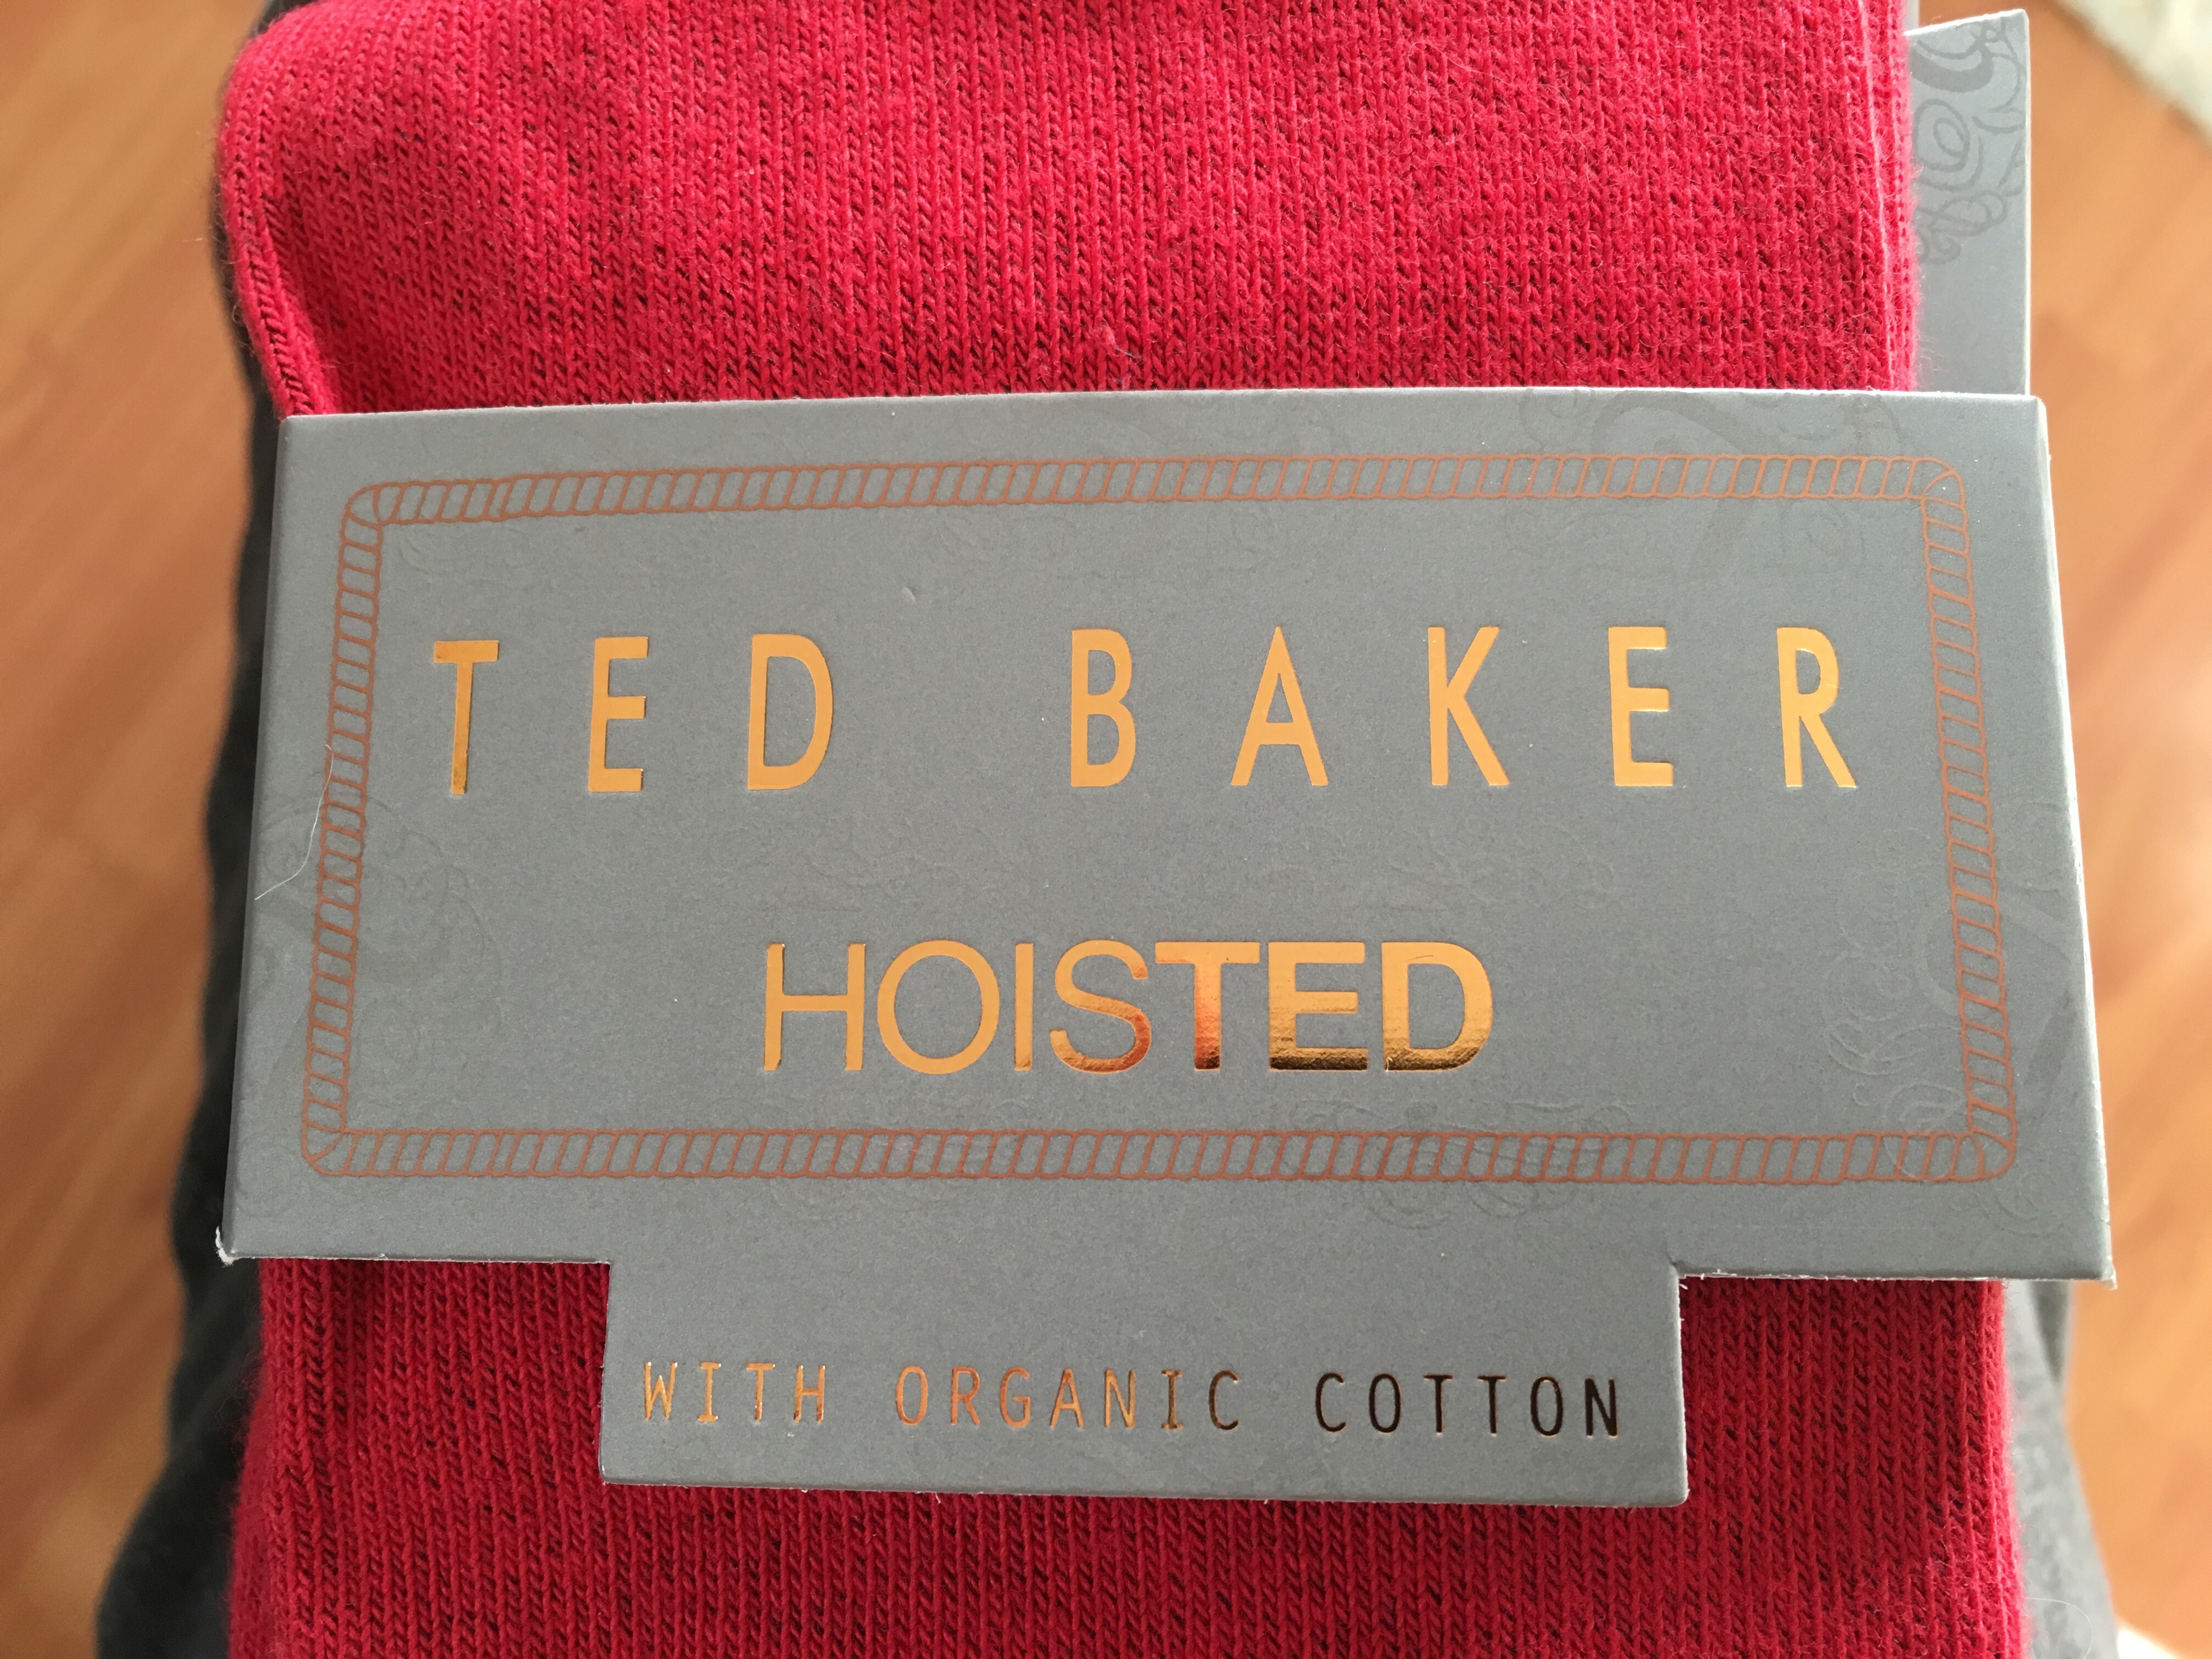 Ted Baker socks